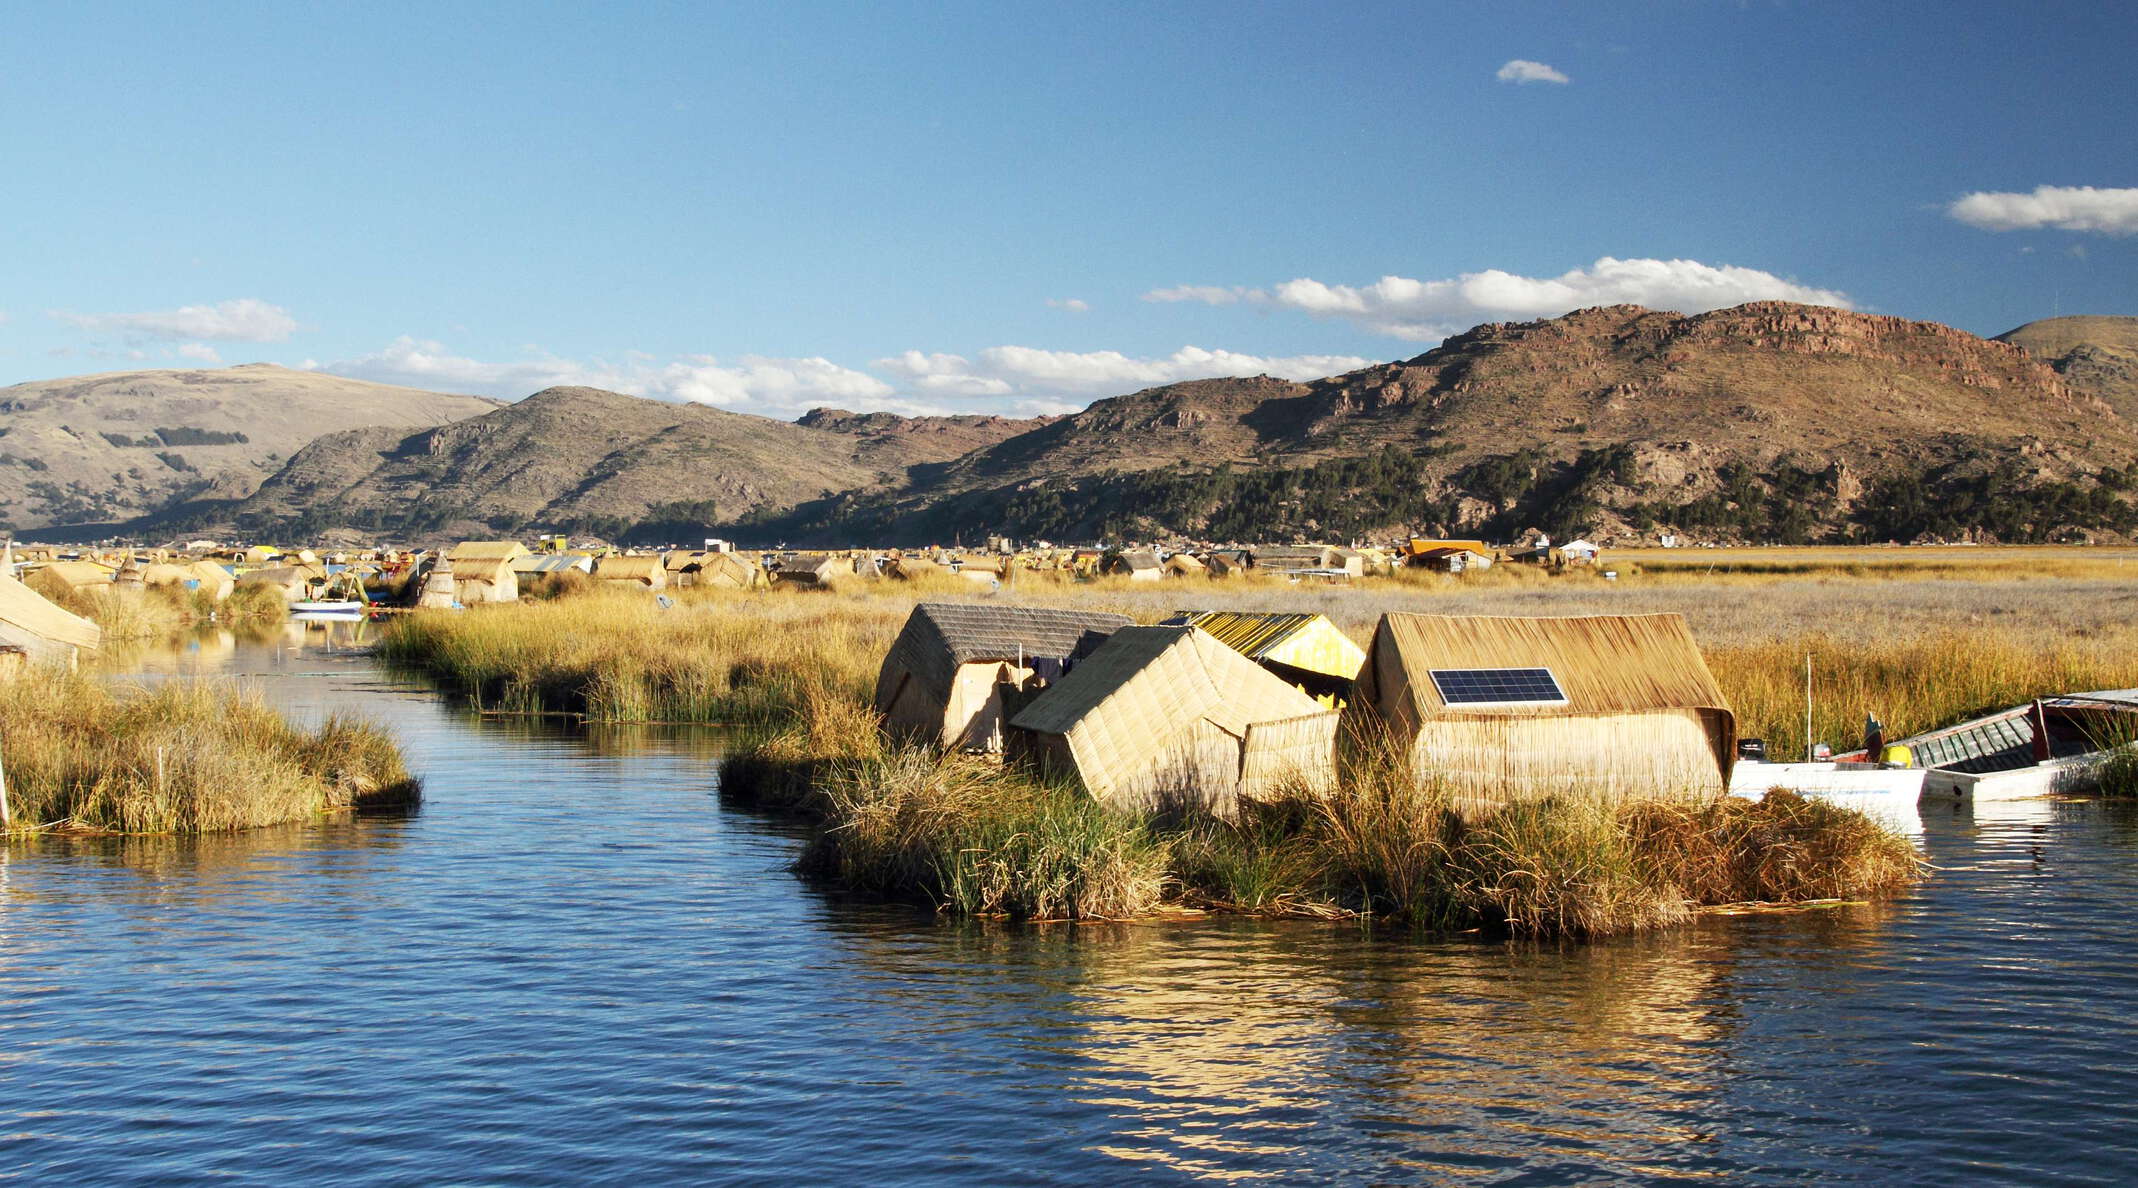 Lago Titicaca | Islas Flotantes de los Urus